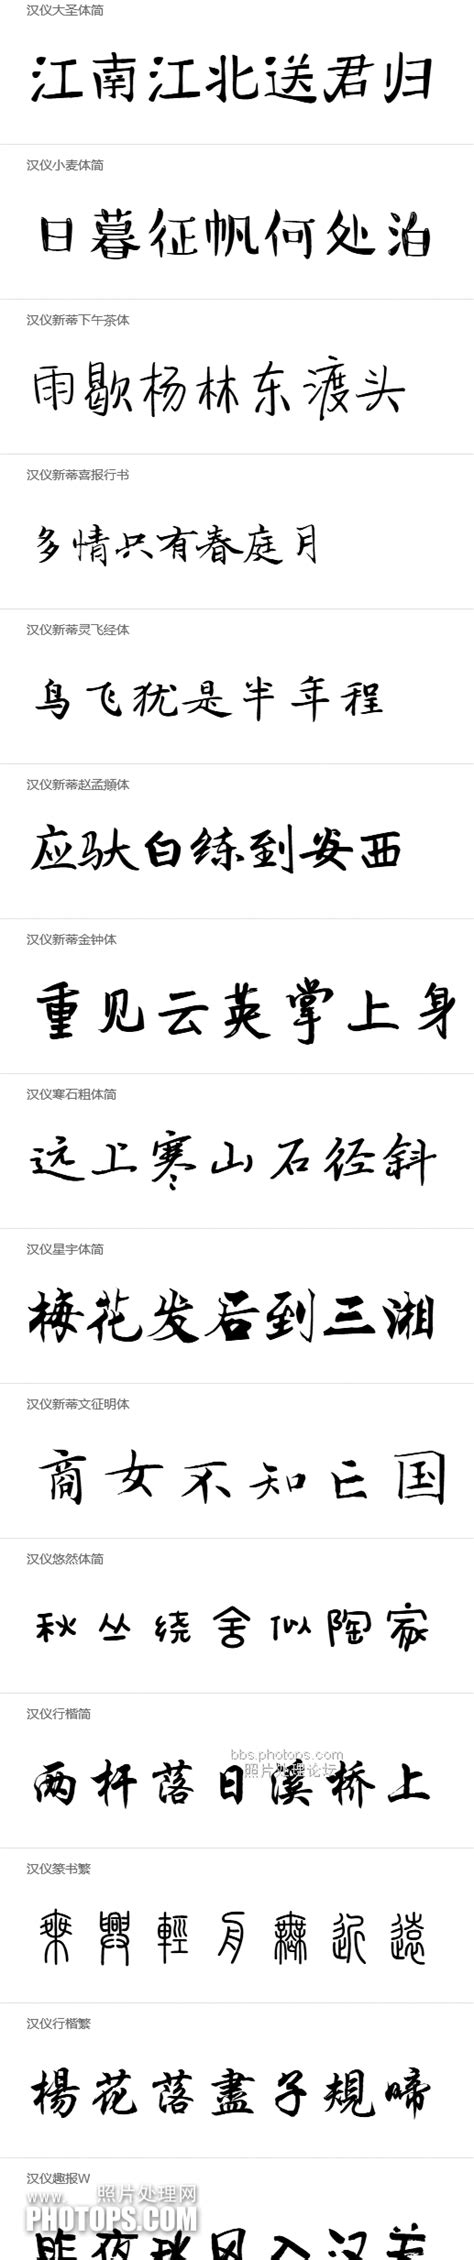 私藏七十多款好看的手写中文毛笔字体包-古风字模字体 - Lightroom摄影PhotoShop后期